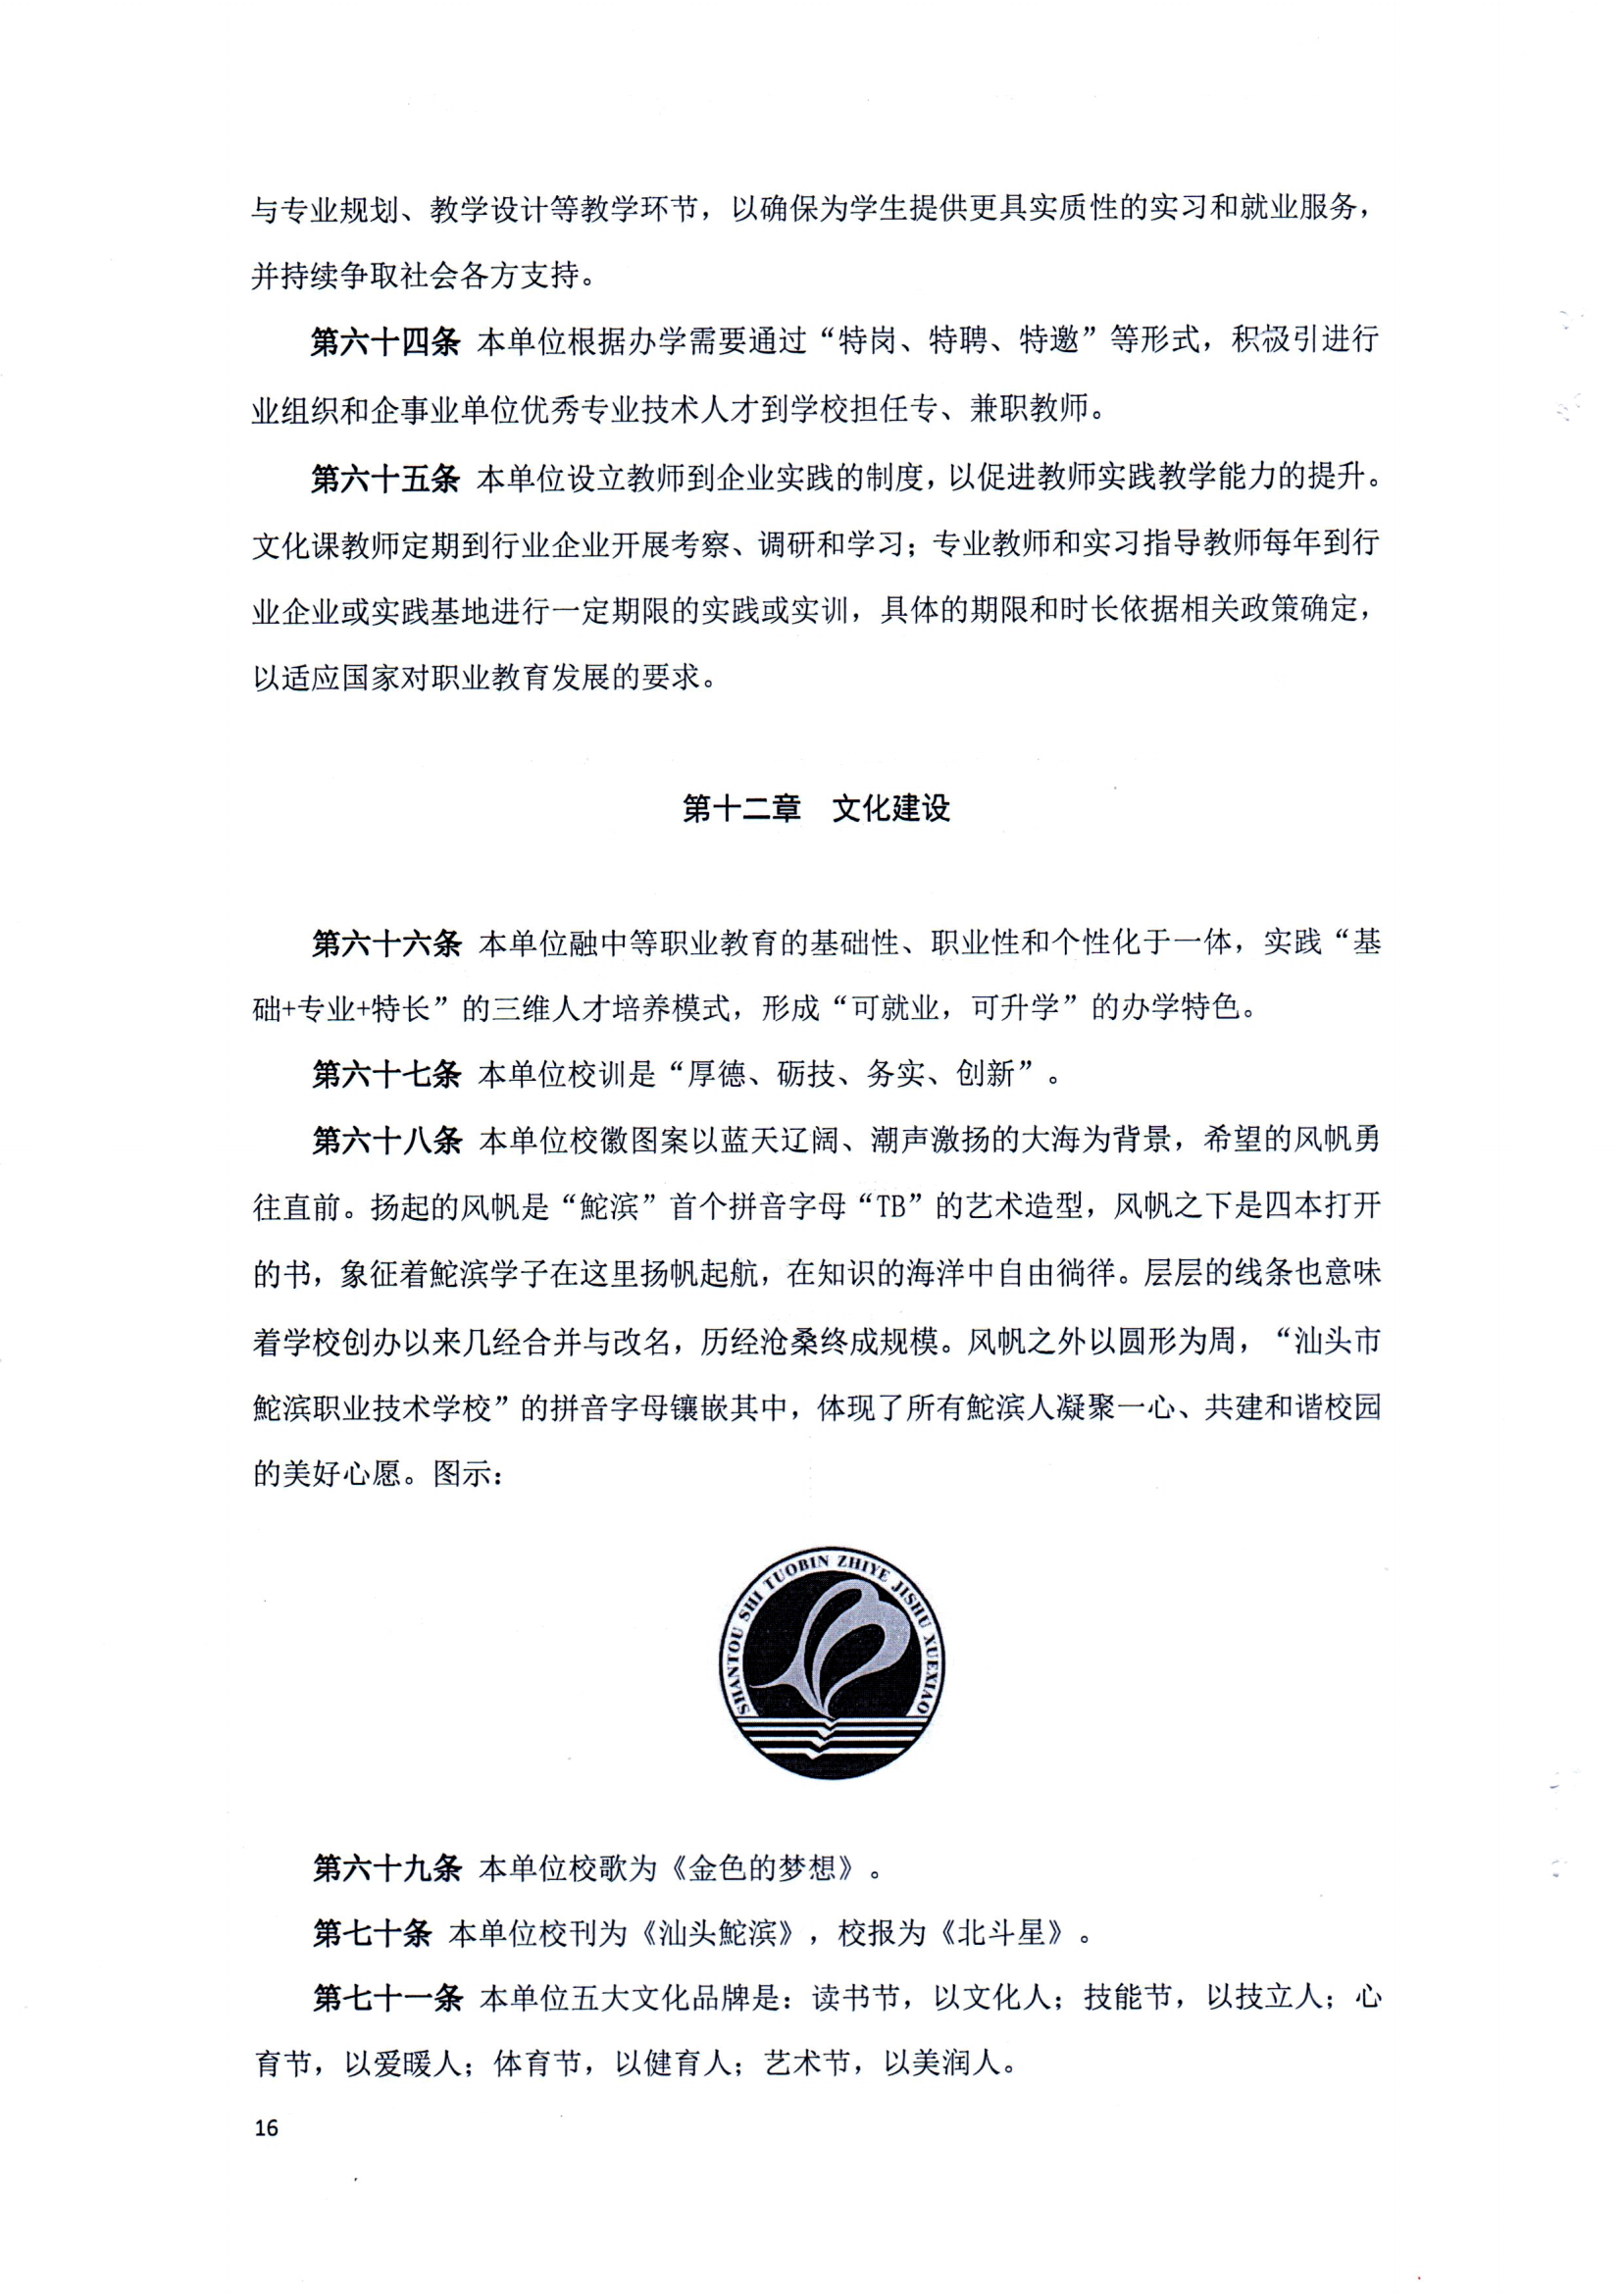 完美体育官方网站（中国）有限公司官网章程（修正案）_15.png